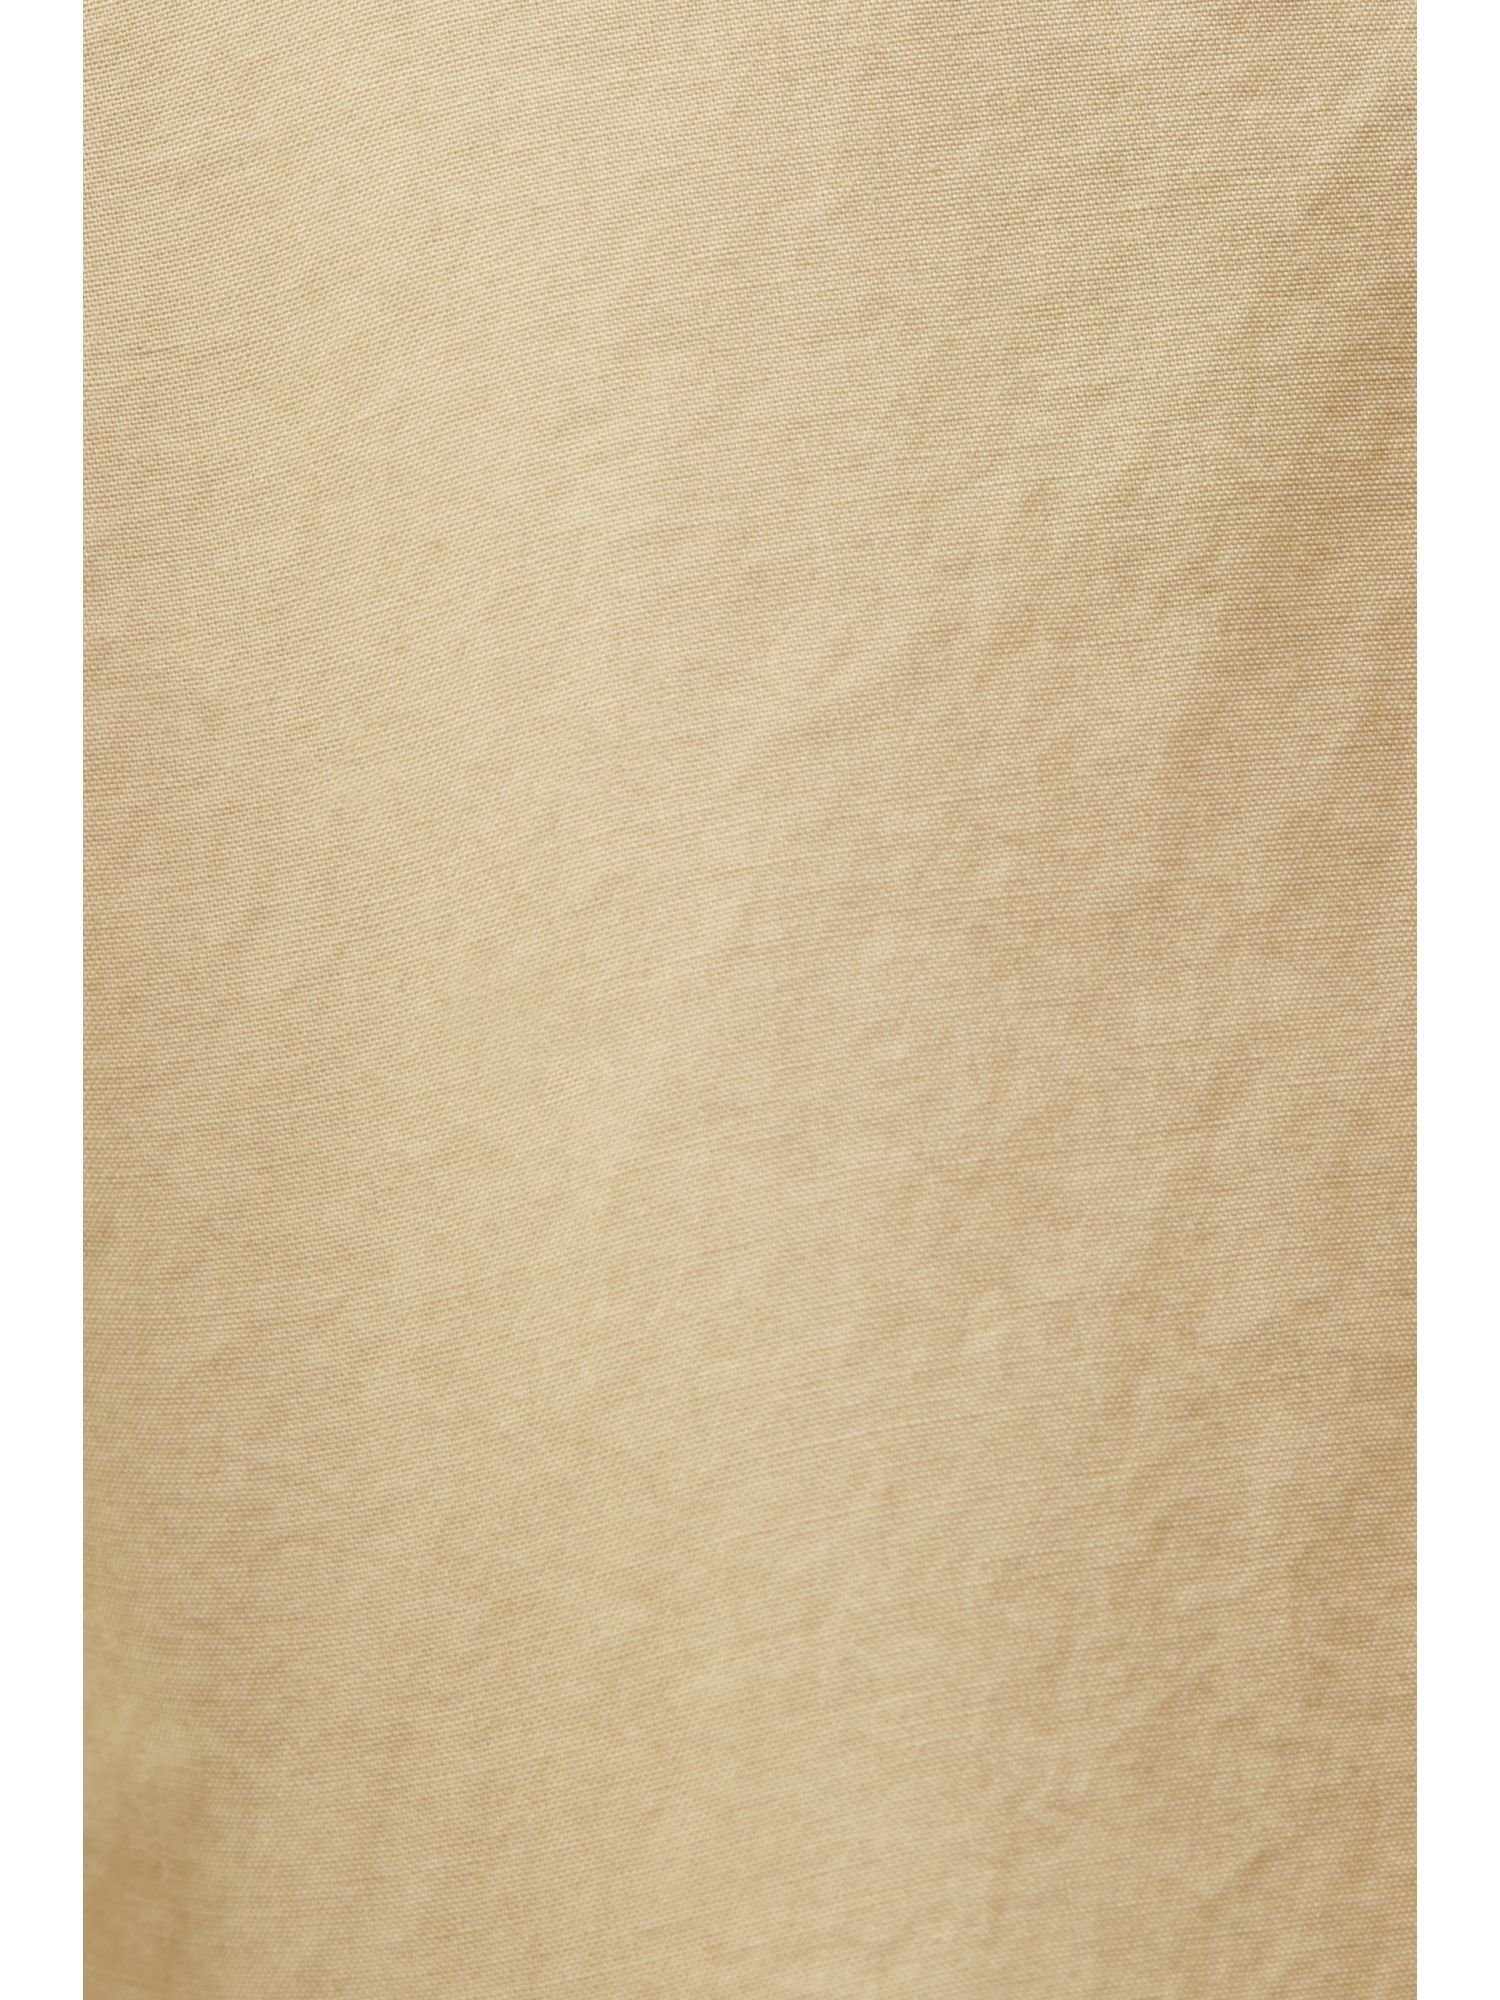 Esprit Baumwolle aus Minirock Minirock 100 Webstoff, SAND %